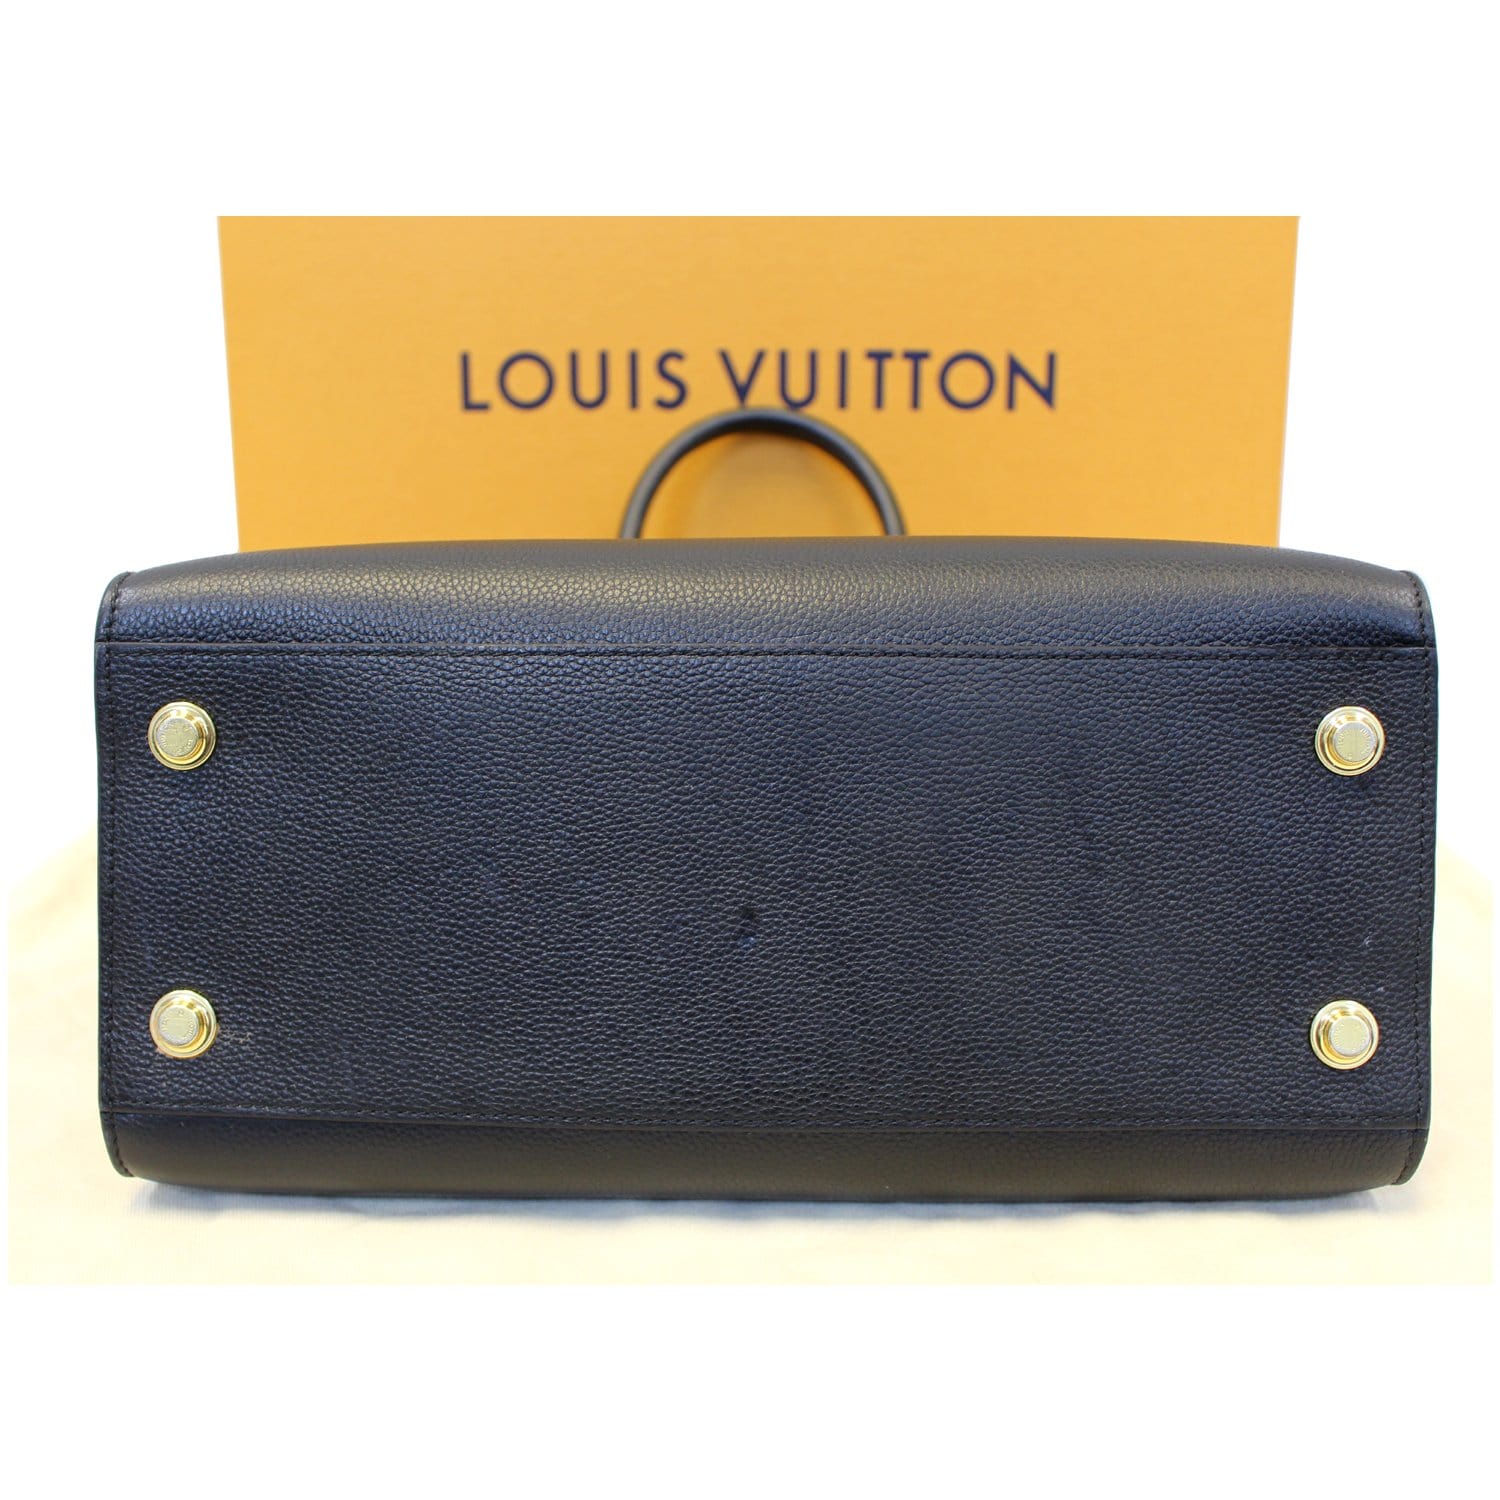 Louis Vuitton - City Steamer MM Grained Calfskin Noir/Beige